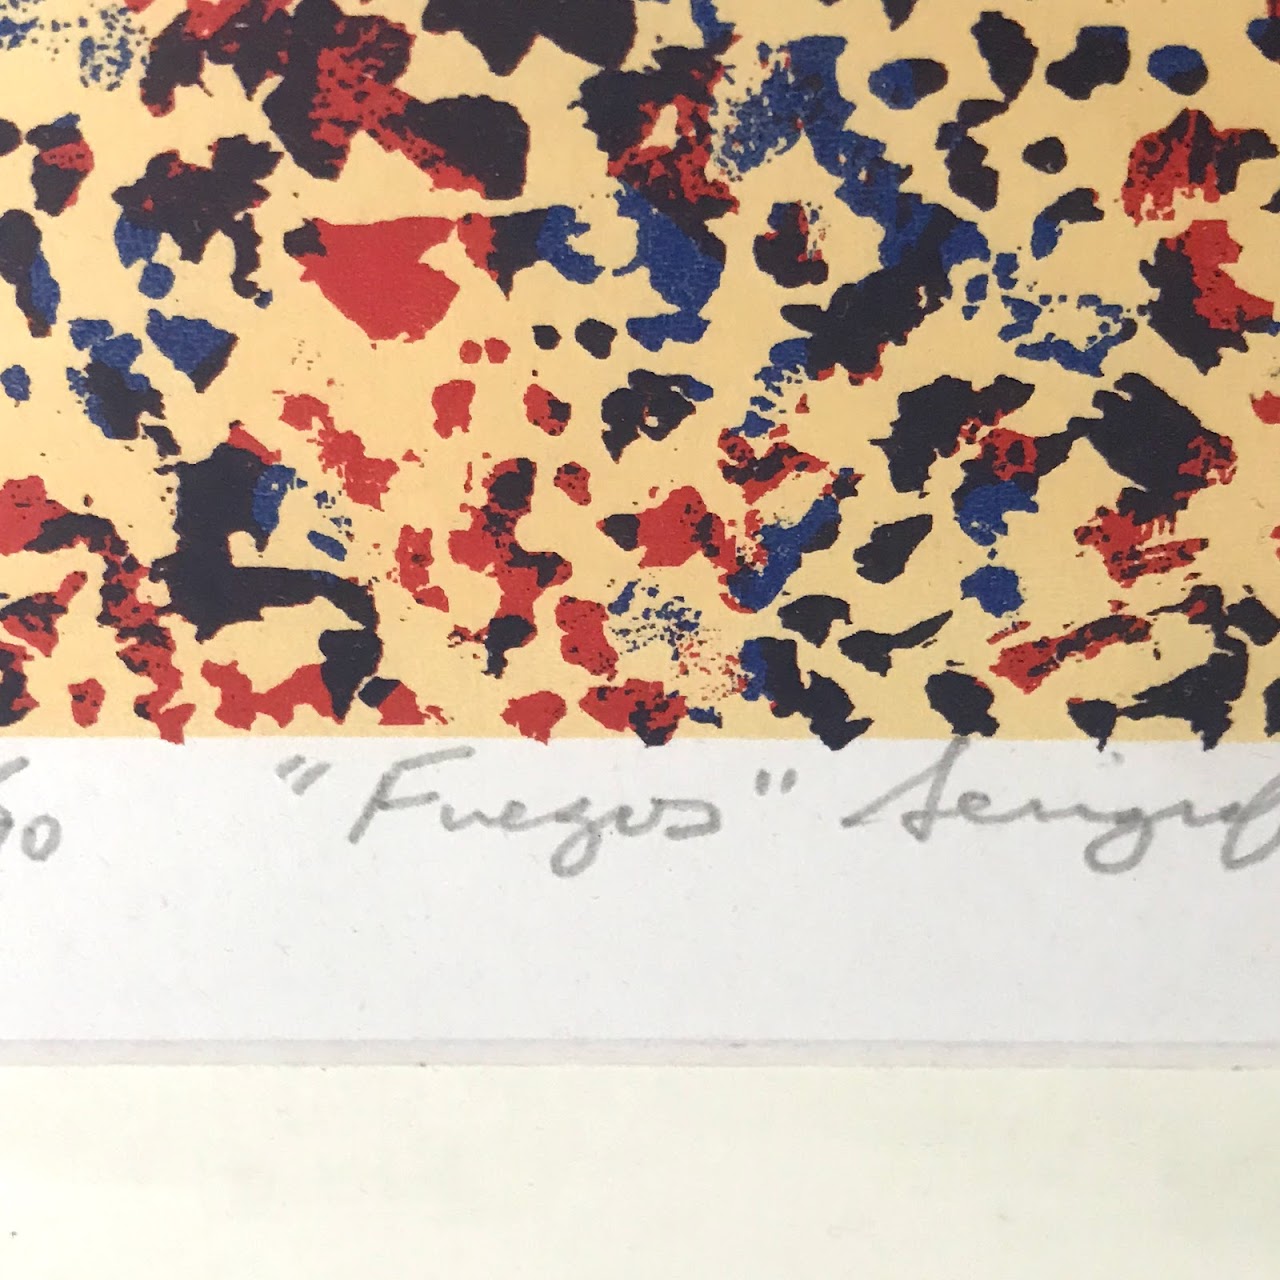 Signed 'Fuegos' Serigraph